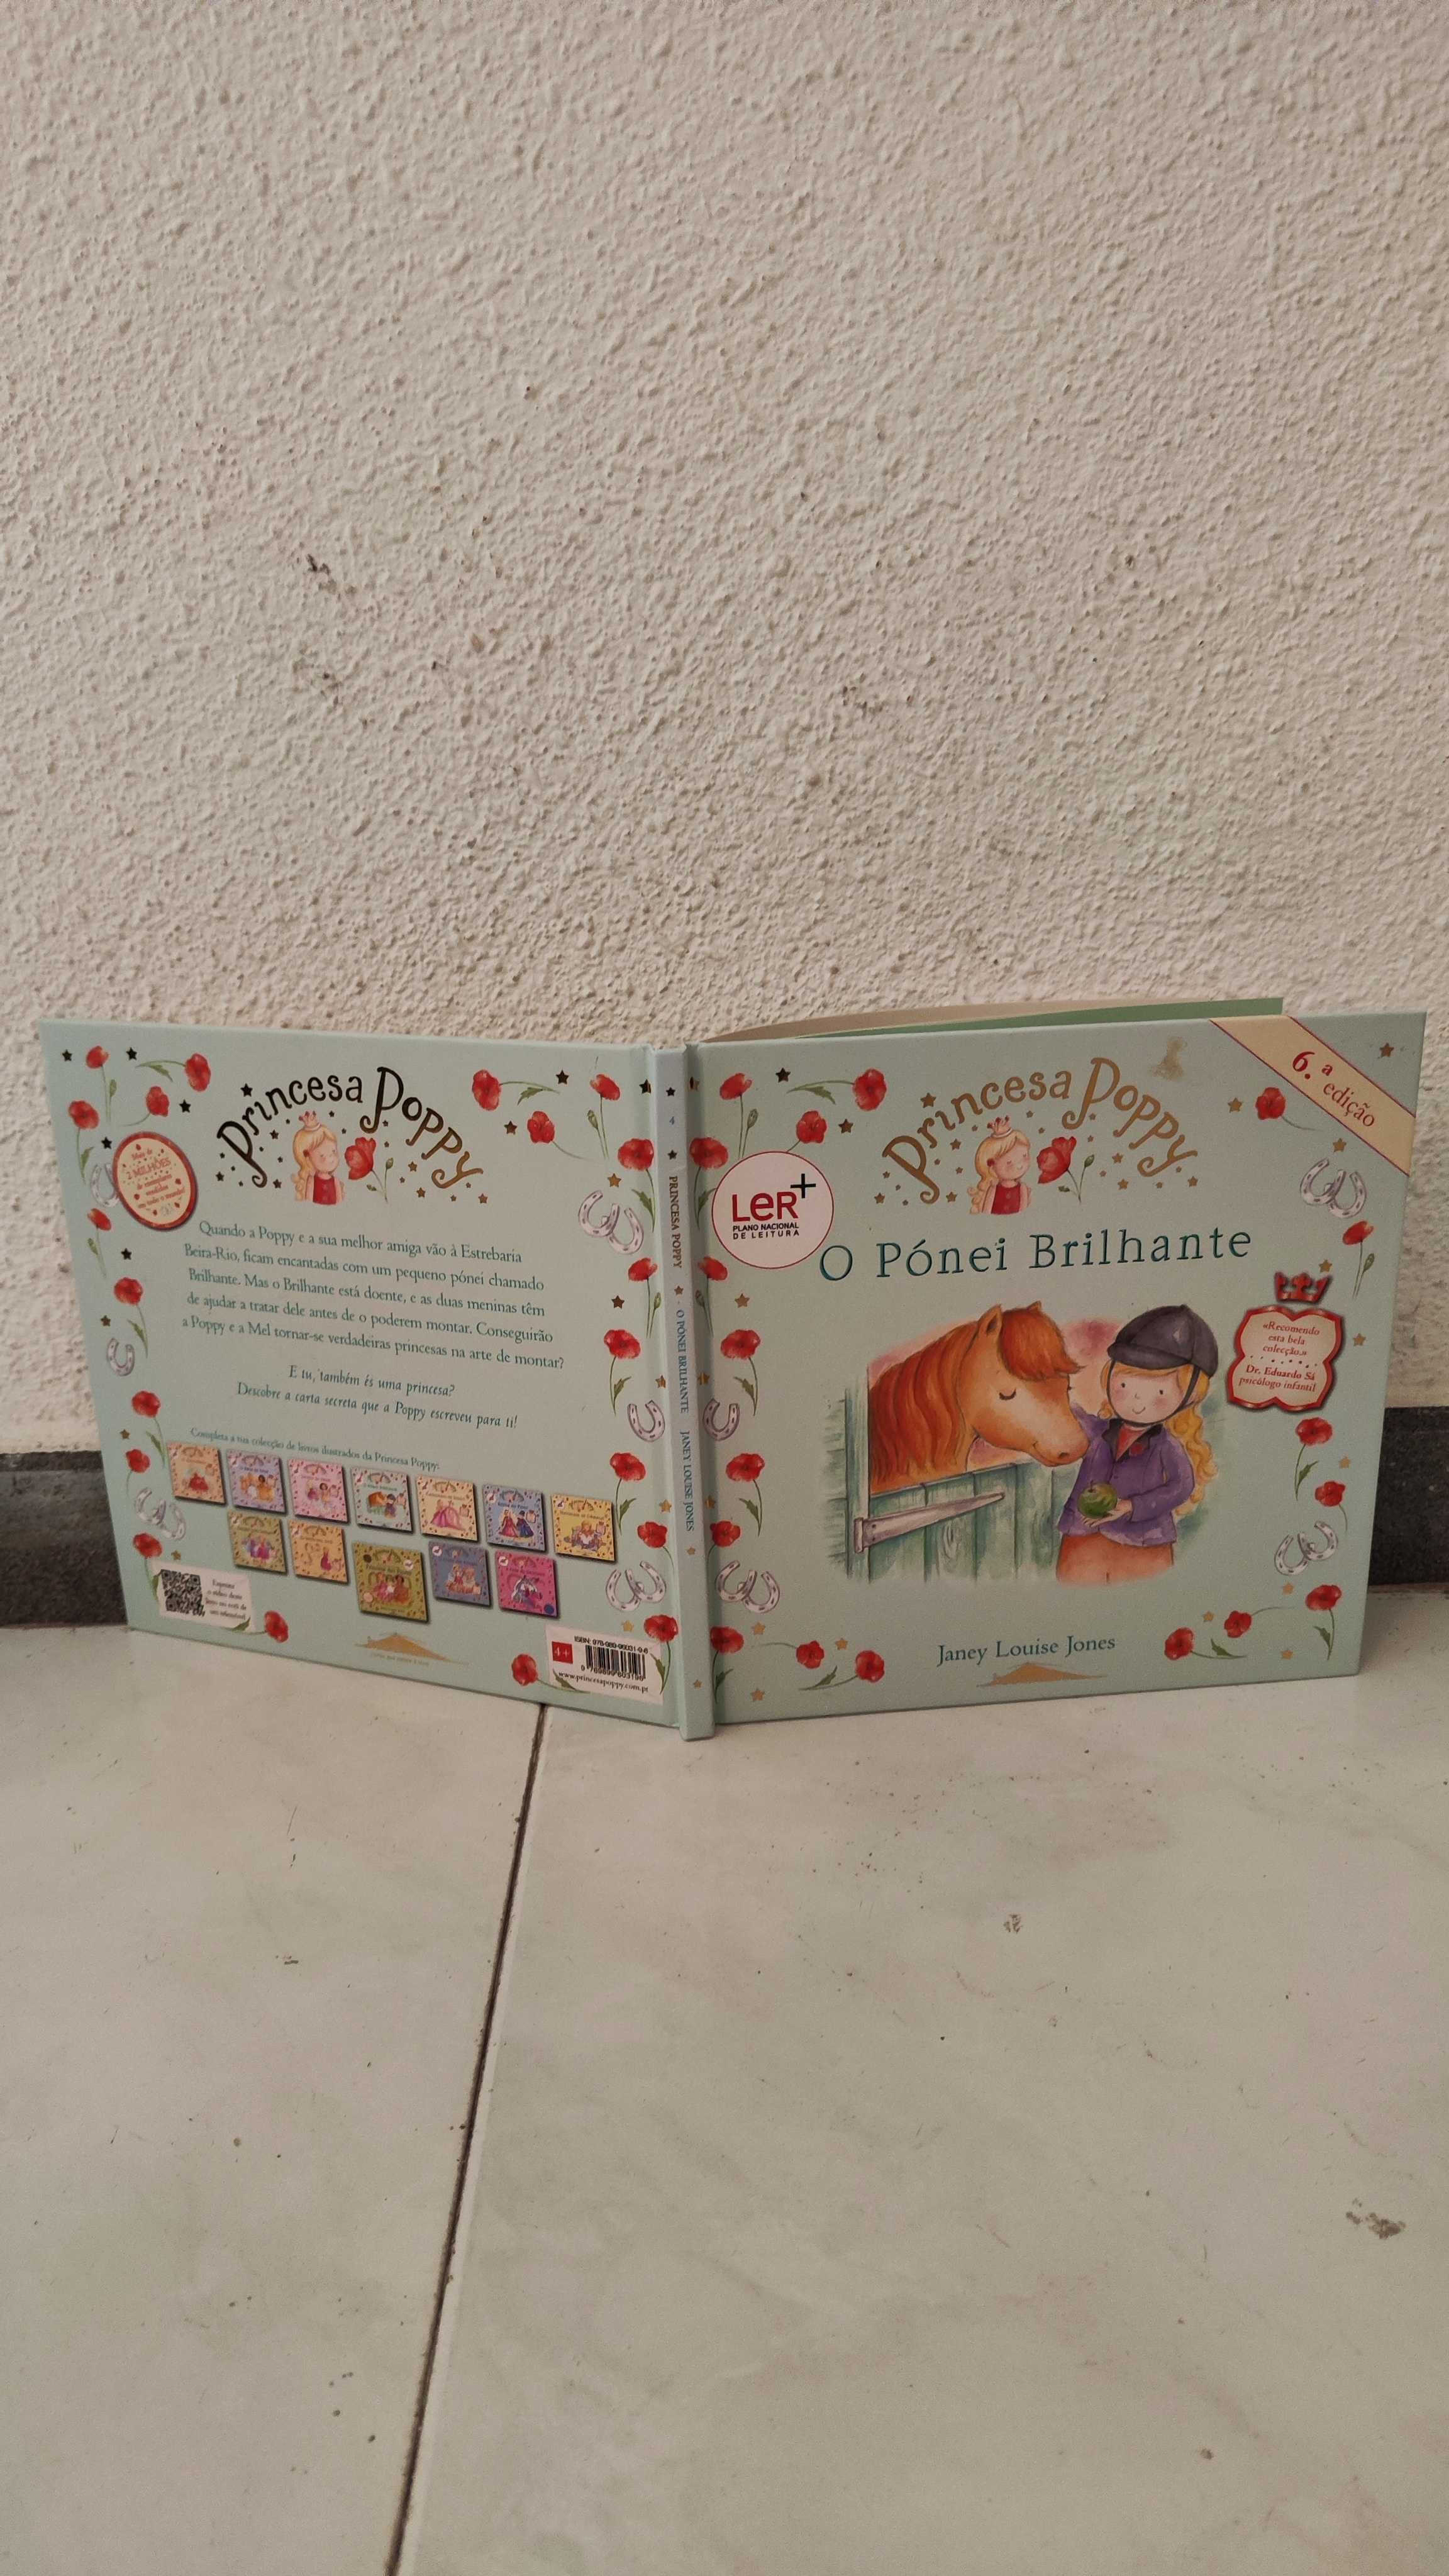 Livros princesa poppy